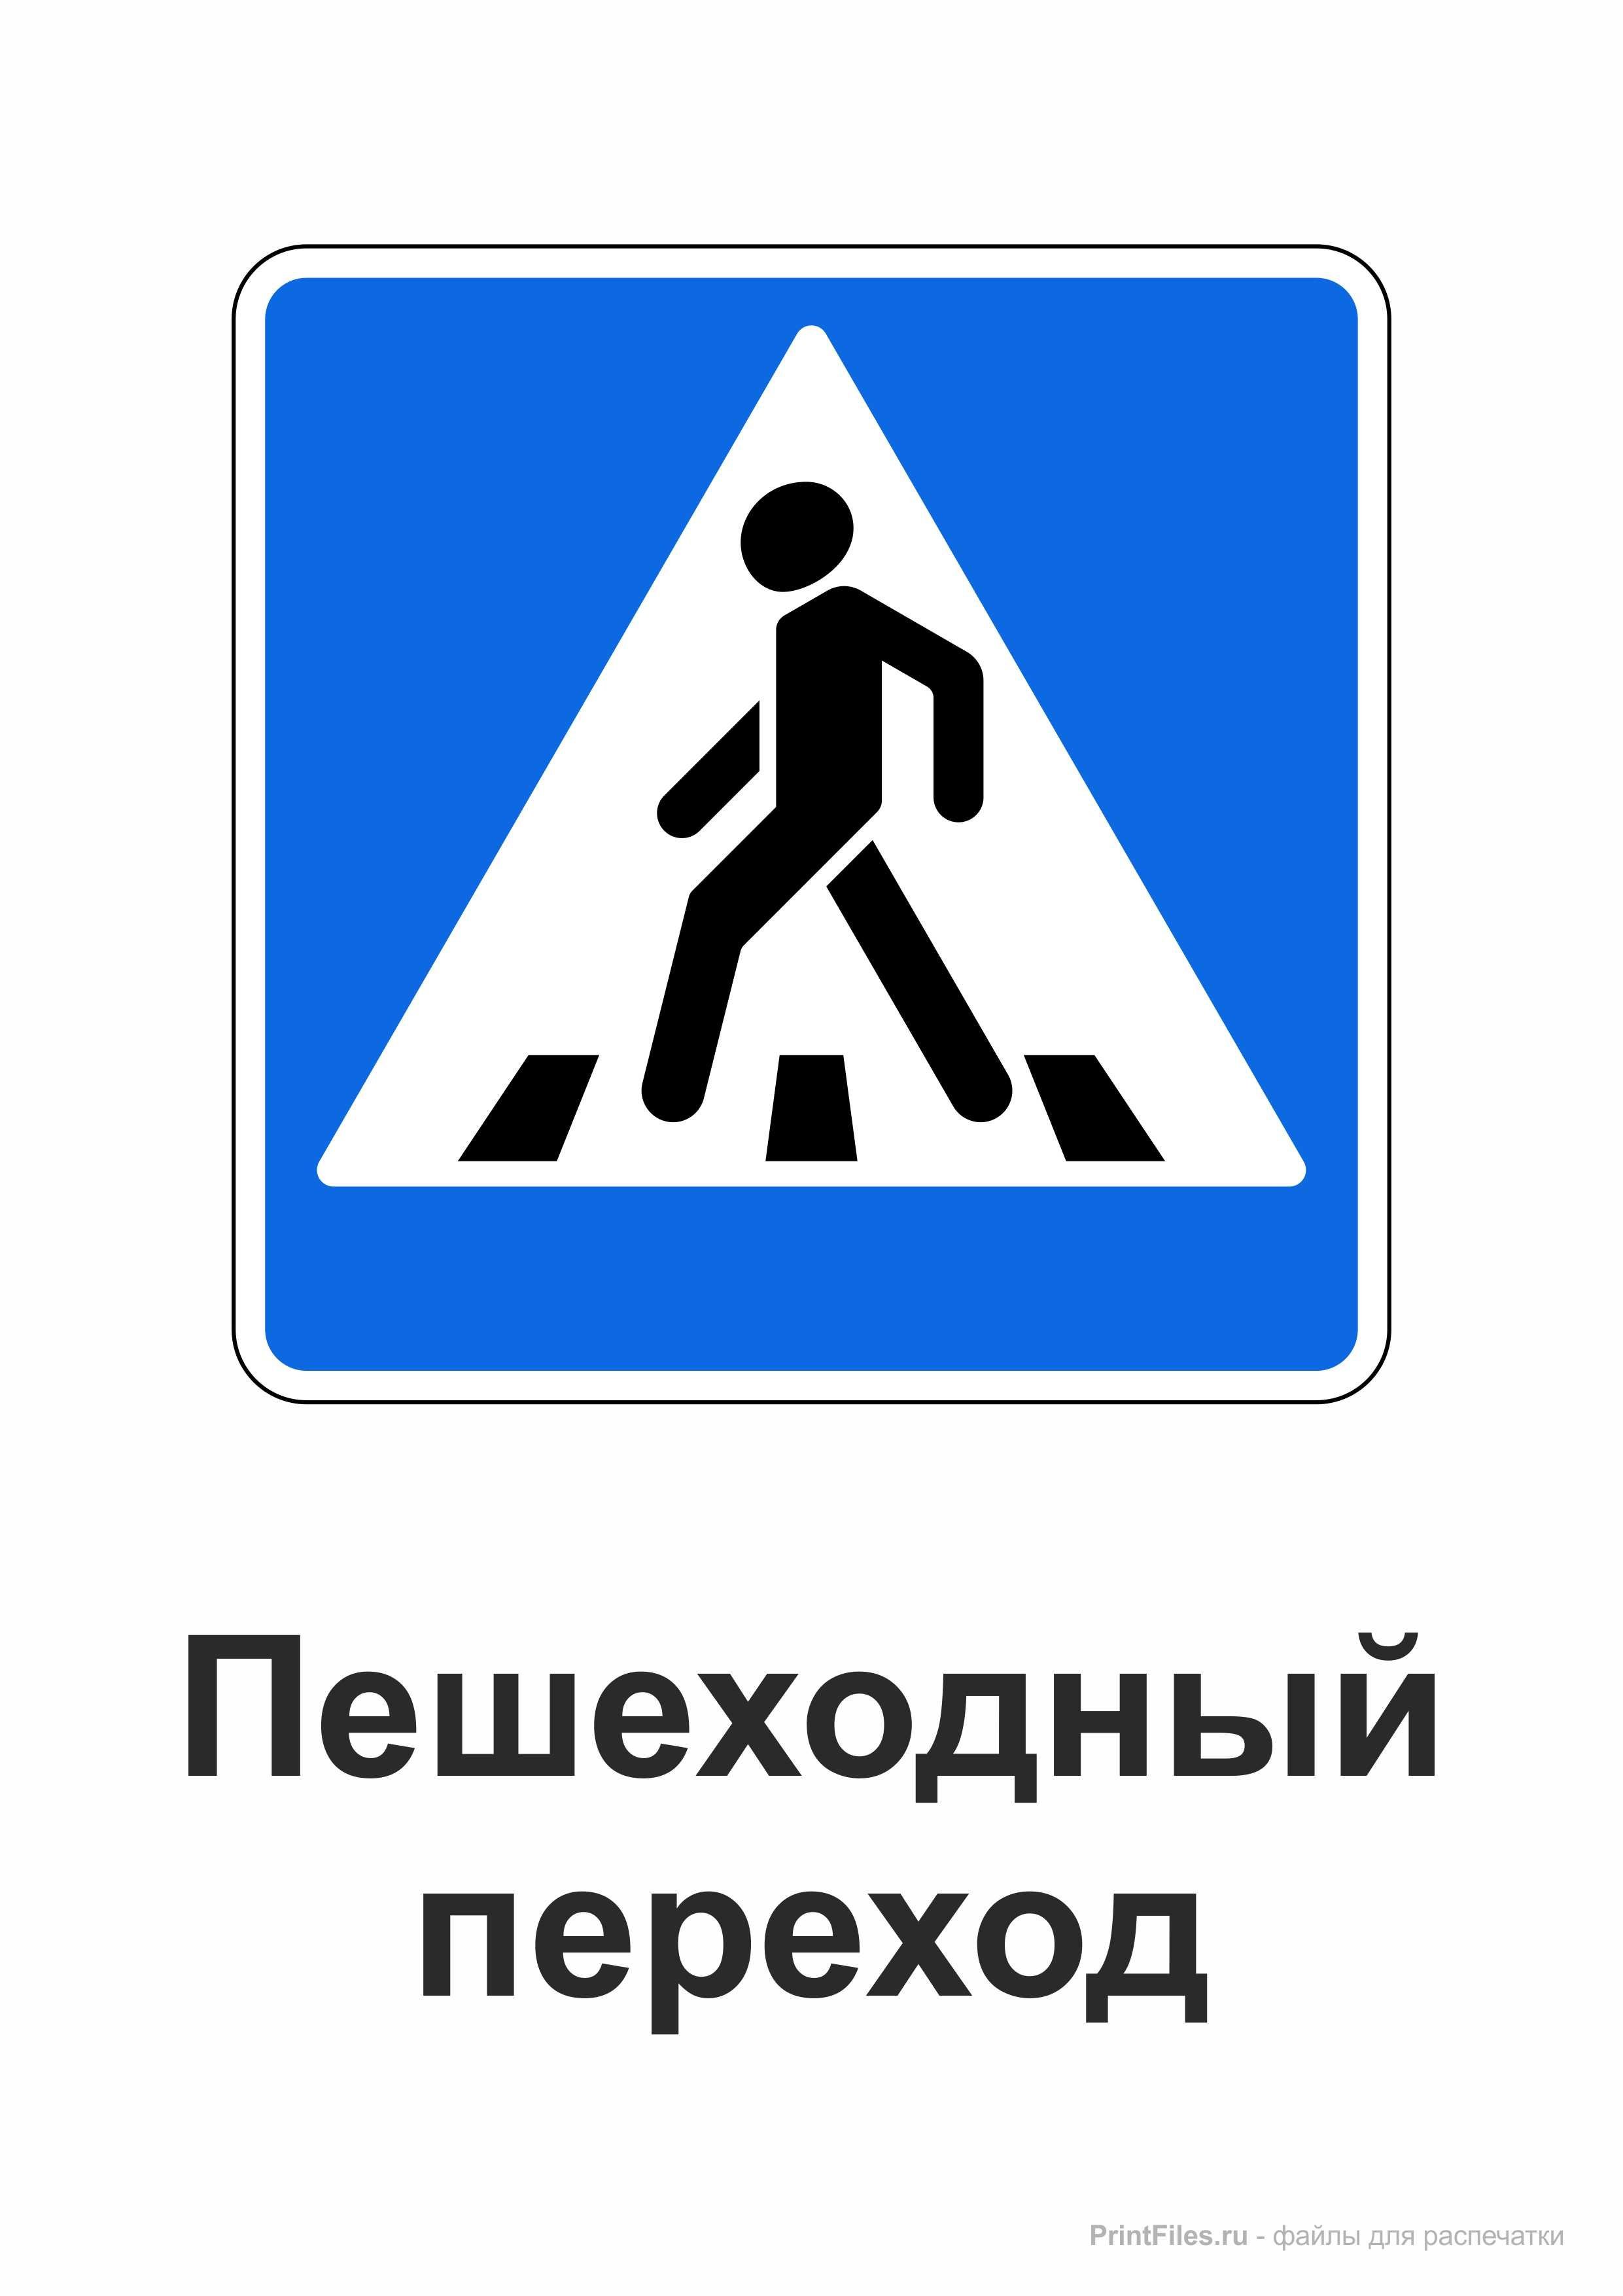 Имени пешеход